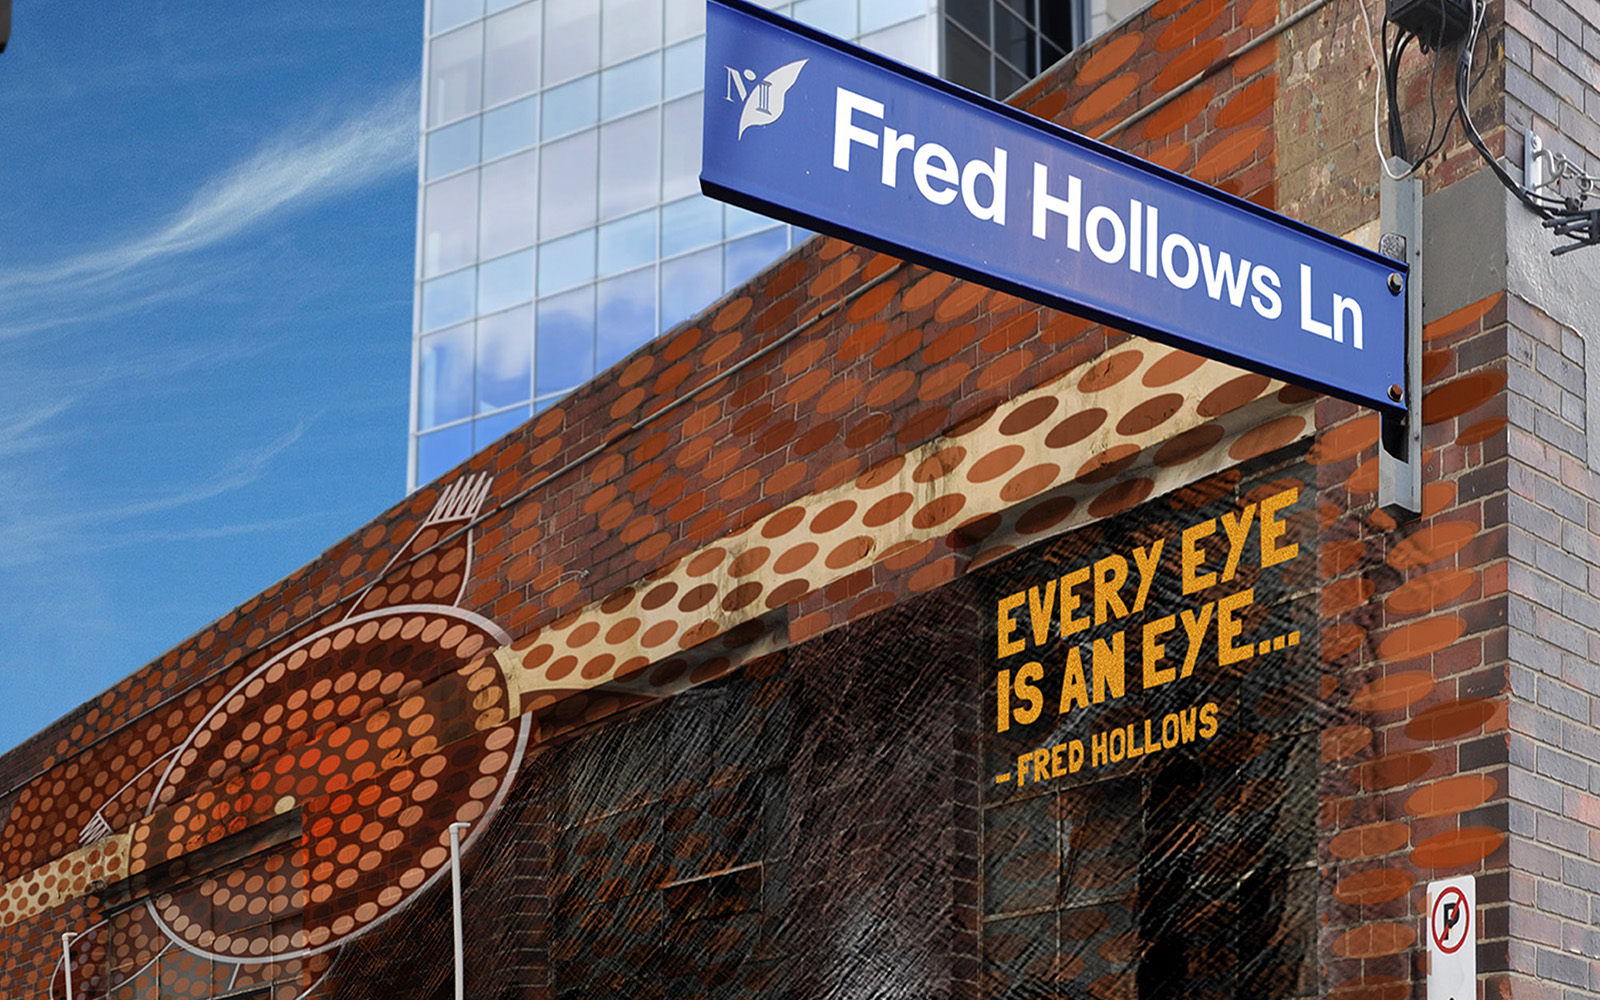 Fred Hollows laneway